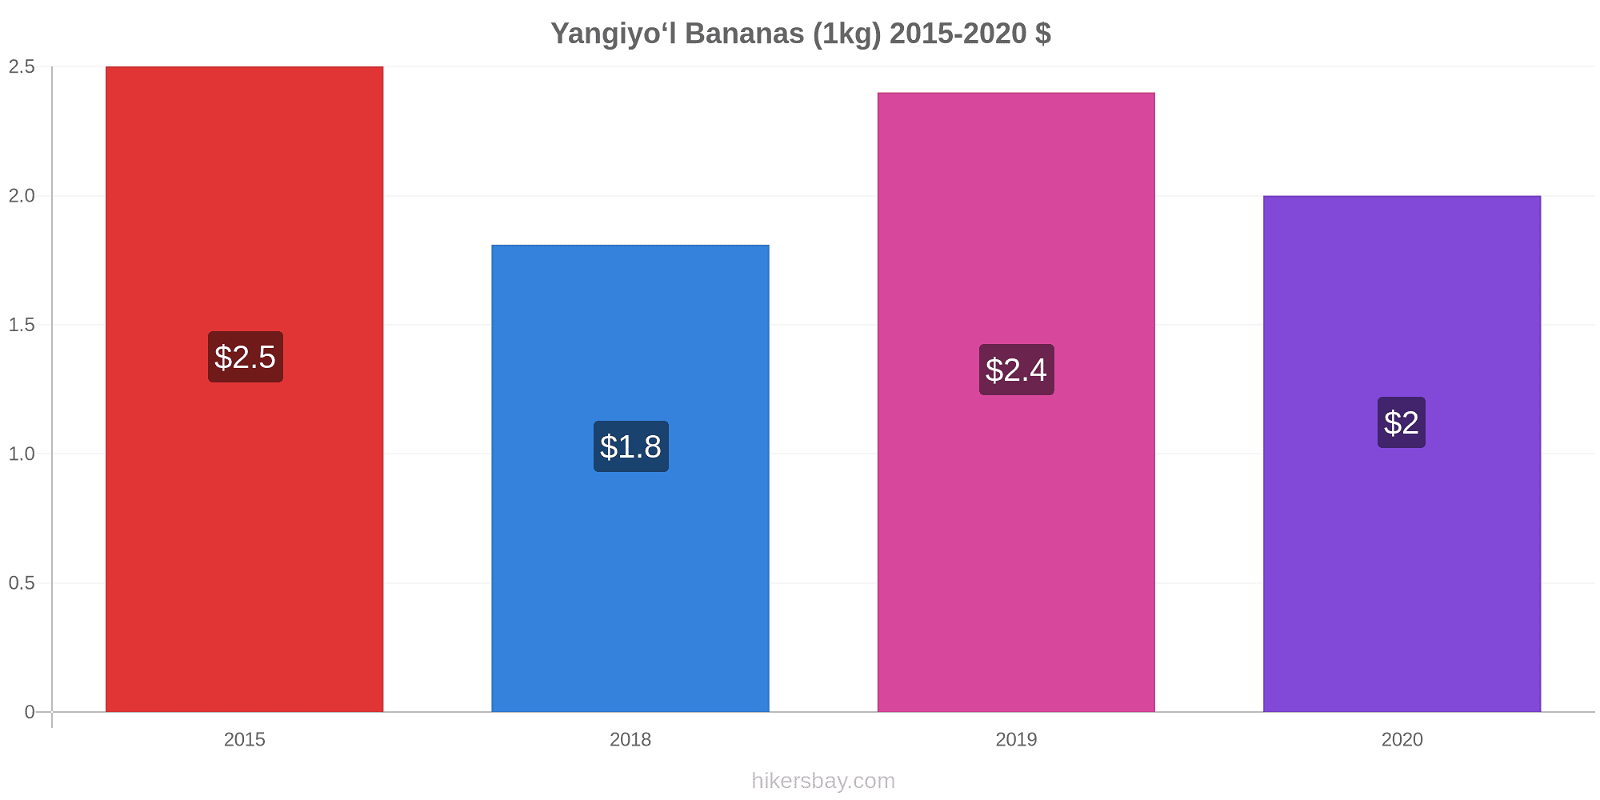 Yangiyo‘l variação de preço Banana (1kg) hikersbay.com